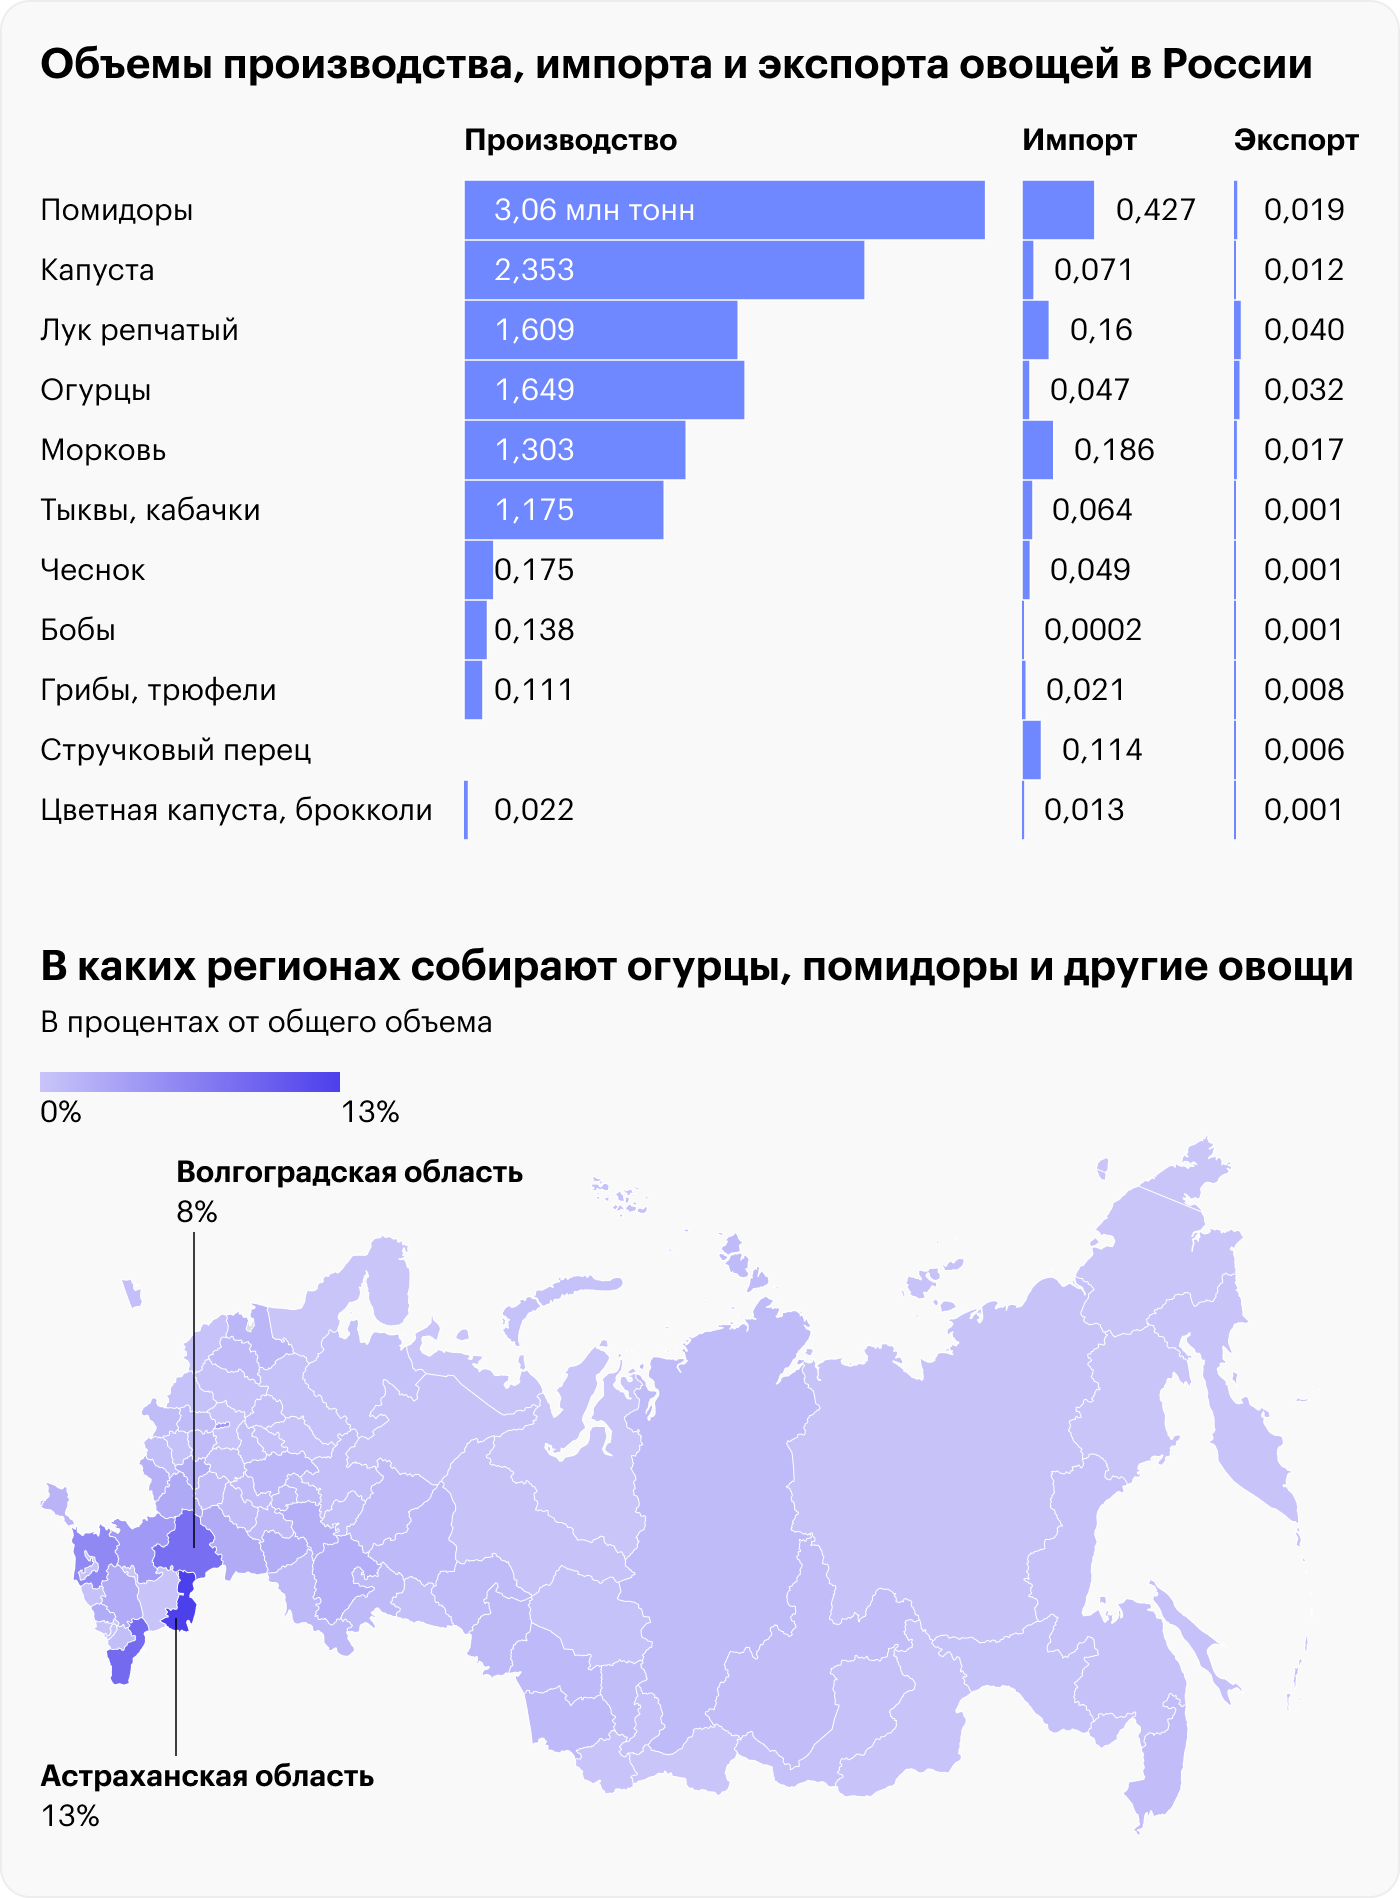 Источники: FAO, Производство, импорт и экспорт овощей в России, 2021, Росстат, Сбор овощей по регионам России. На графике могут быть отображены не все регионы из⁠-⁠за отсутствия данных